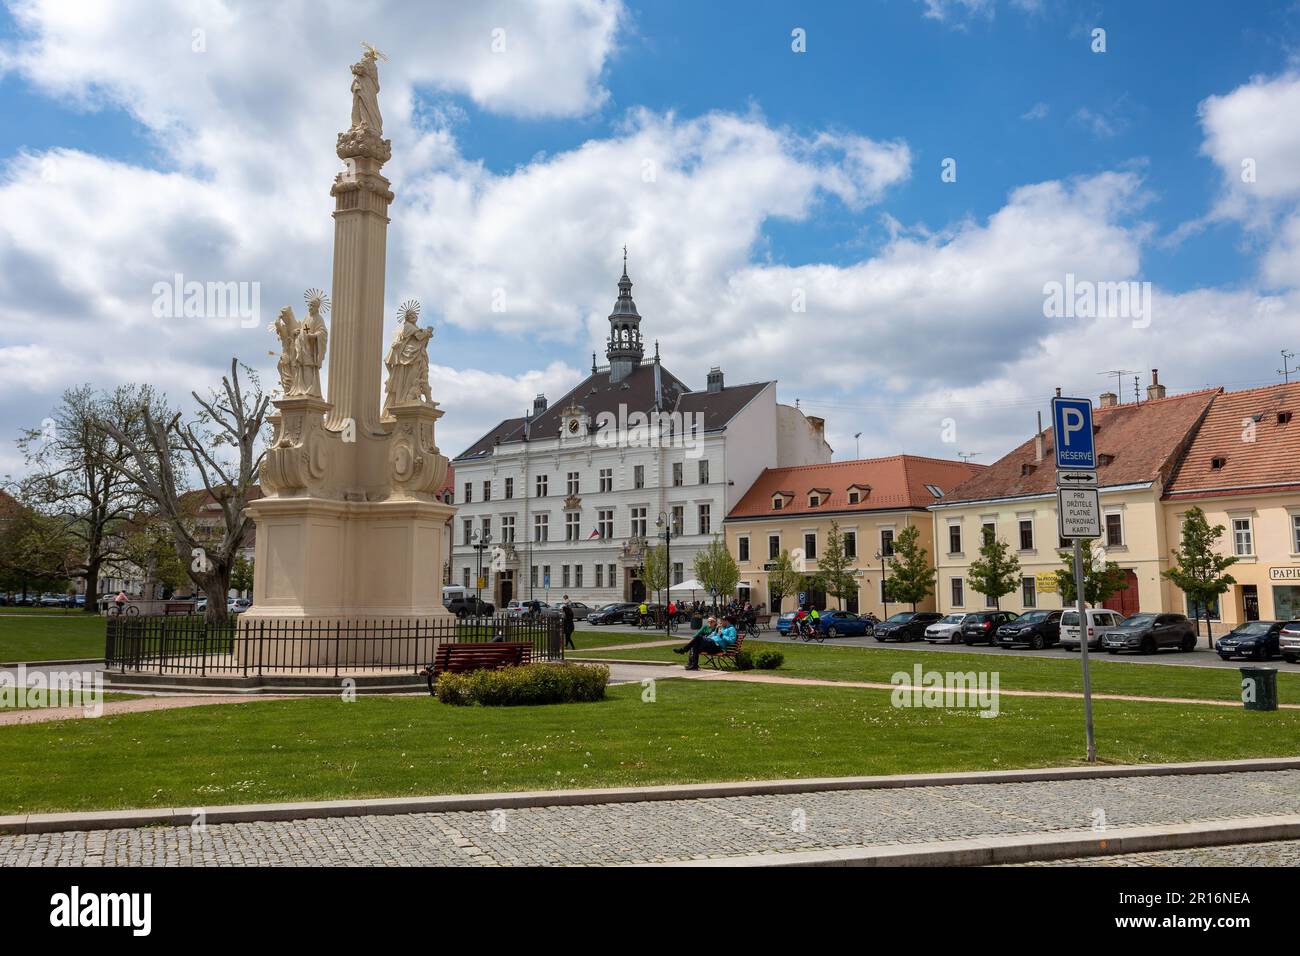 VALTICE, TSCHECHISCHE REPUBLIK - MAI 7. 2023: Stadtplatz mit historischem Gebäude - Rathaus in der Stadt Valtice, Südmähren, Tschechische Republik Stockfoto